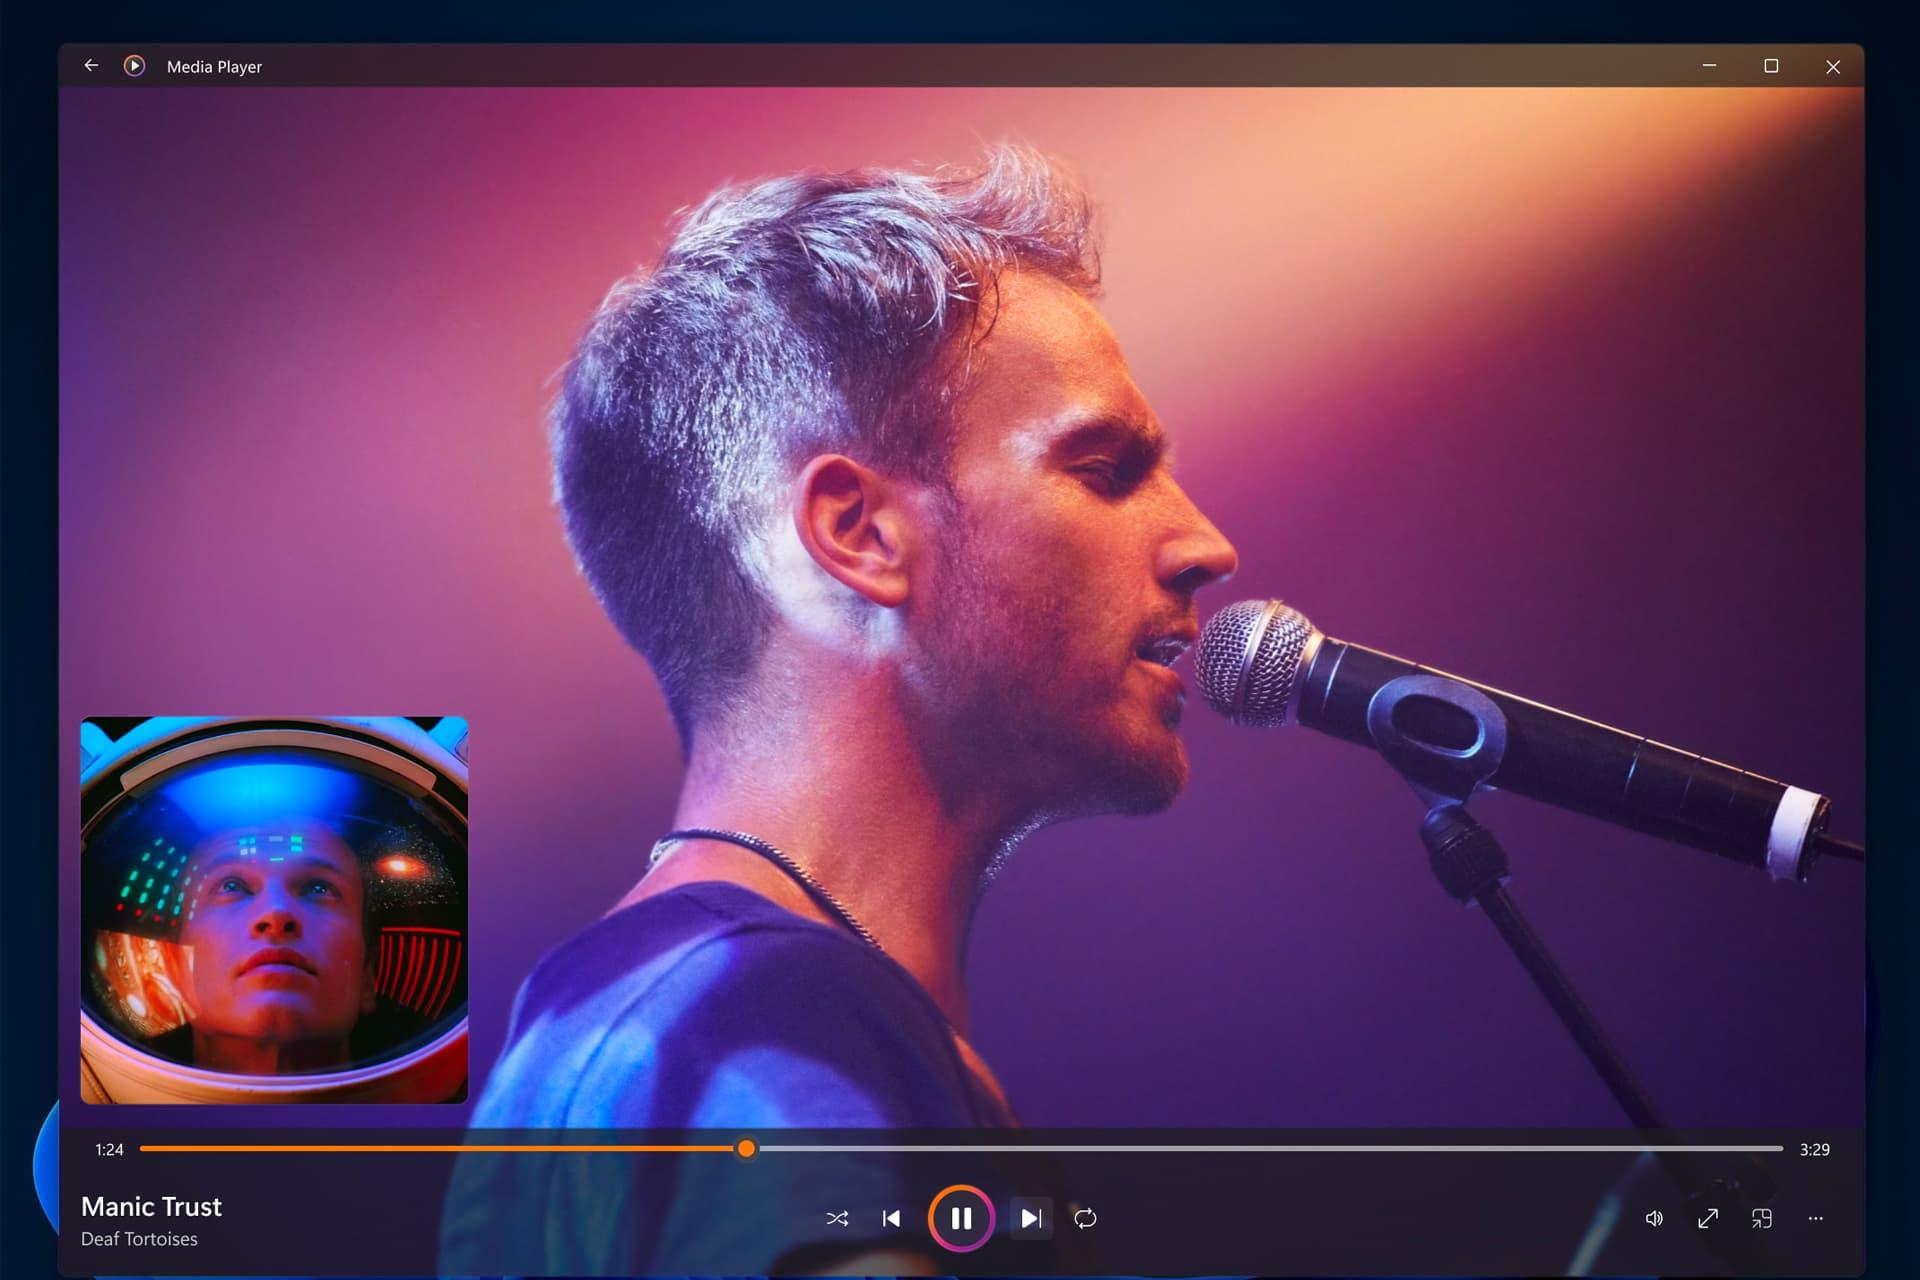 خواننده مرد با میکروفون در حال اجرای کنسرت / مدیا پیلر ویندوز